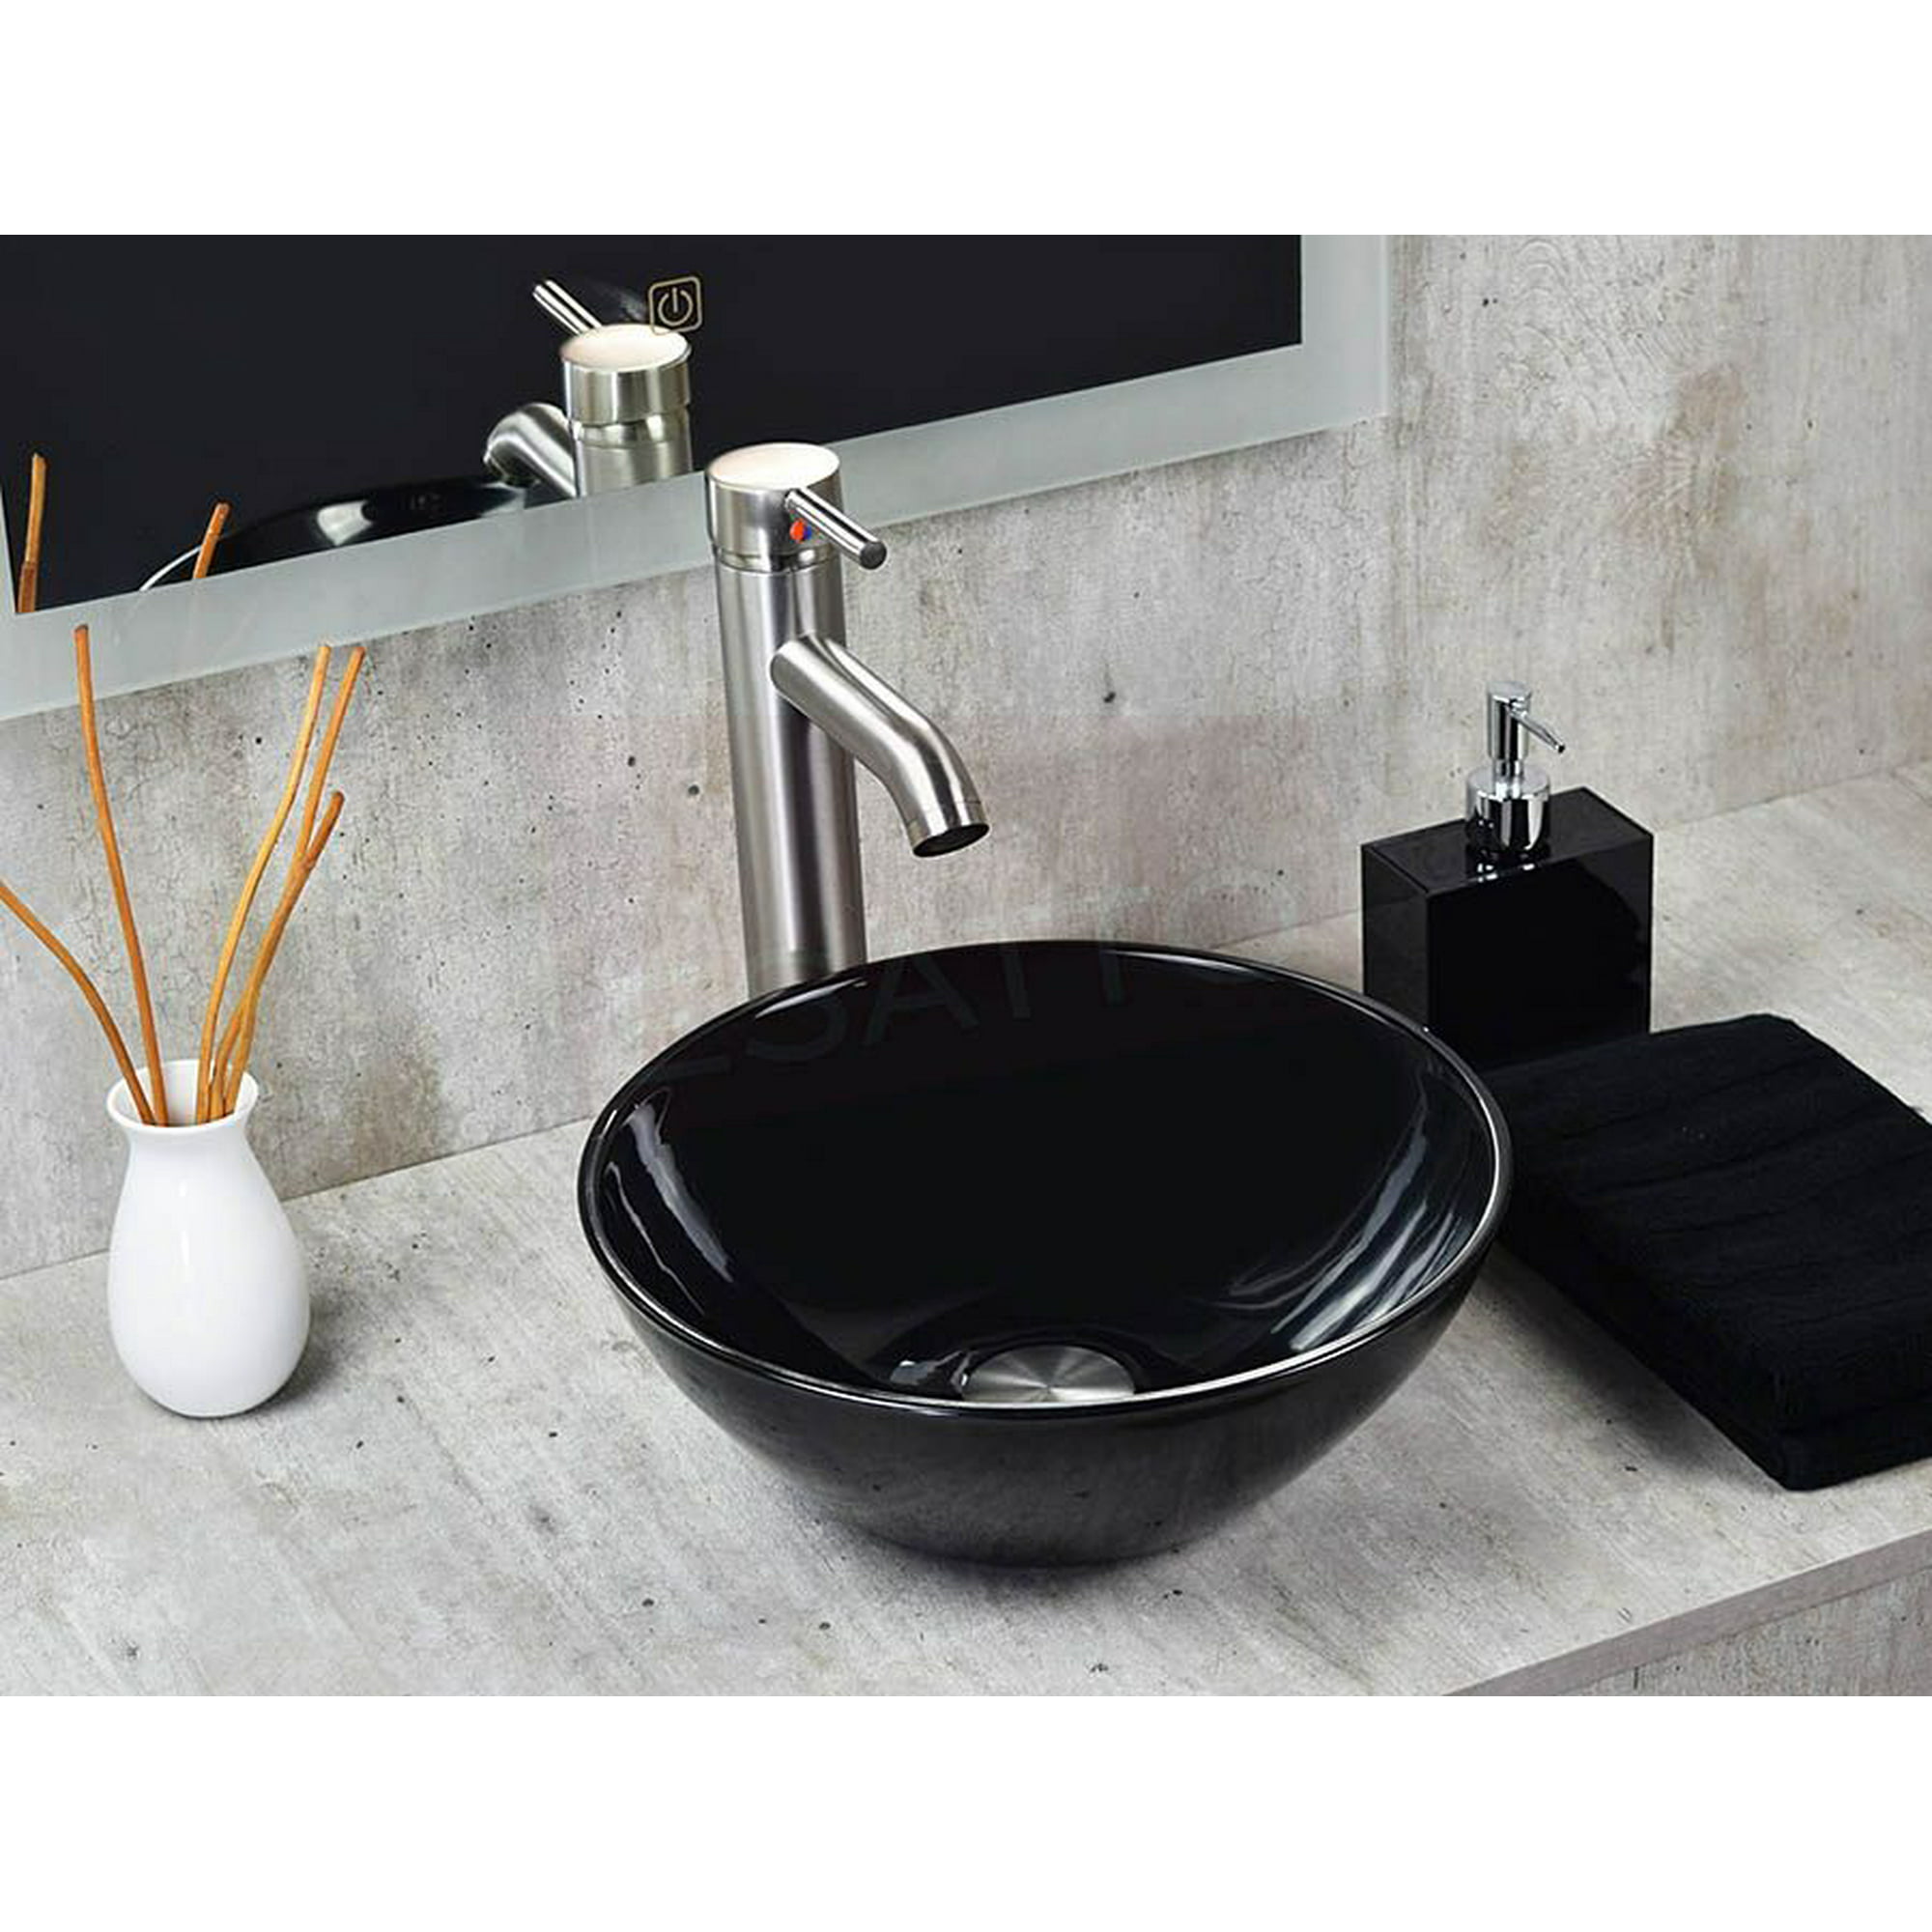 Esatto® kit nero satín paquete de precio mejorado con lavabo, llave y desagües listo para instalar esatto paquete completo de lavabo para baño